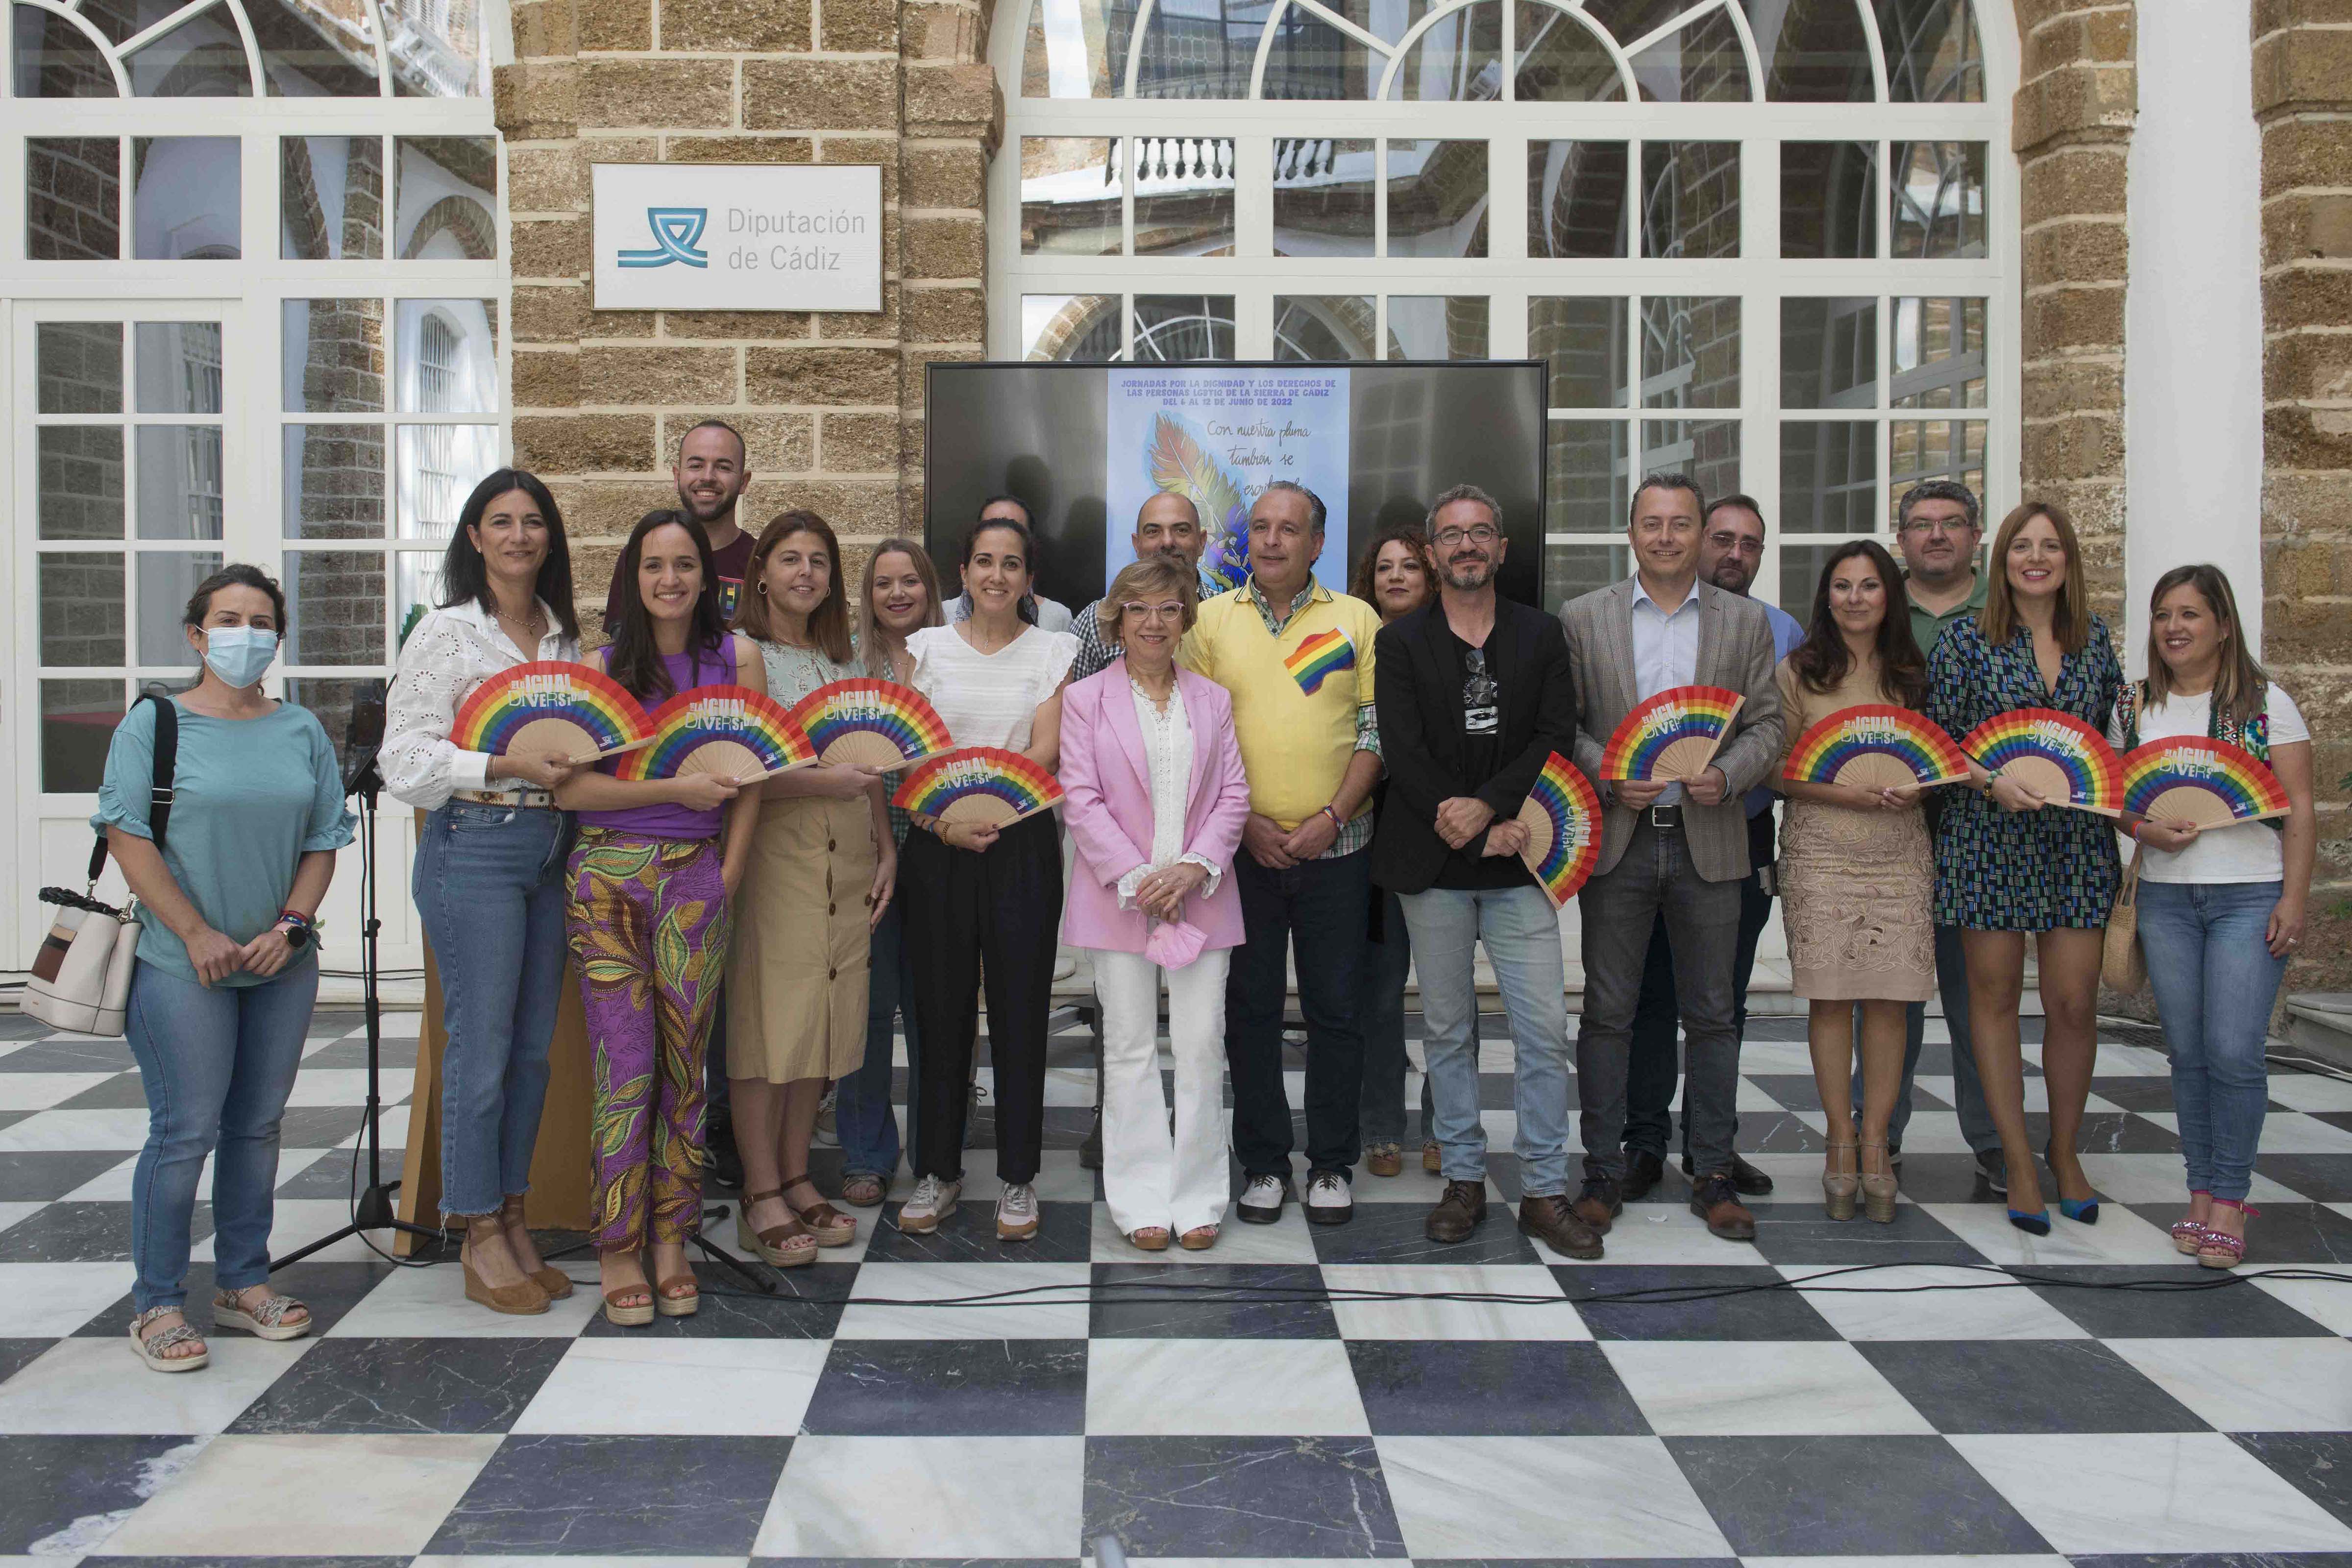  El Orgullo Serrano ondeará la bandera de colores en el Zahara Pride para "combatir estereotipos"